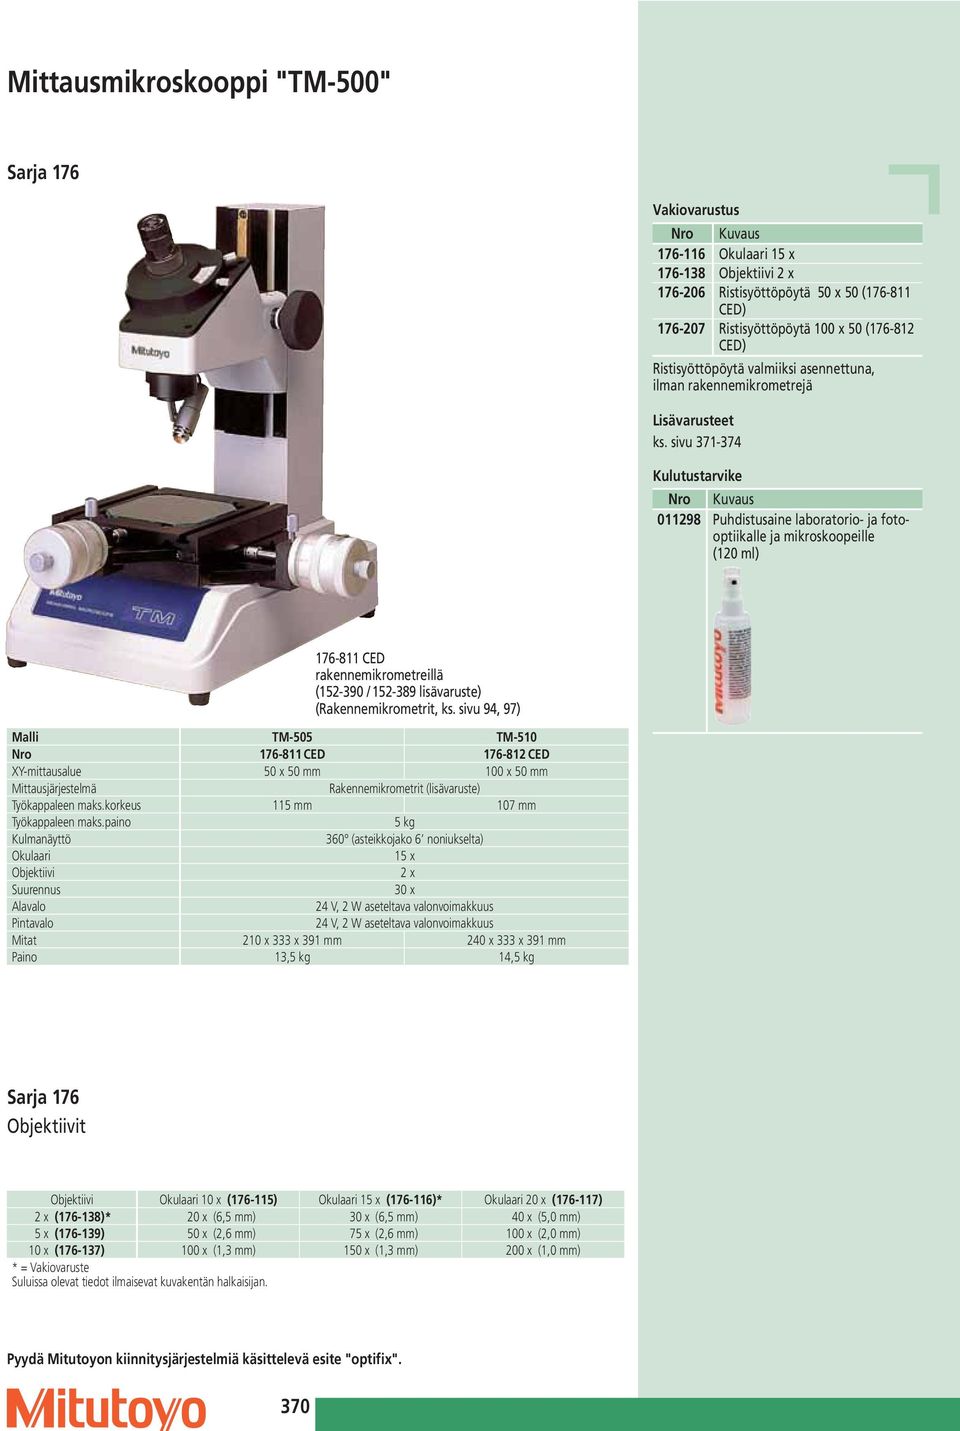 sivu 371-374 Kulutustarvike 011298 Puhdistusaine laboratorio- ja fotooptiikalle ja mikroskoopeille (120 ml) 176-811 CED rakennemikrometreillä (152-390 / 152-389 lisävaruste) (Rakennemikrometrit, ks.